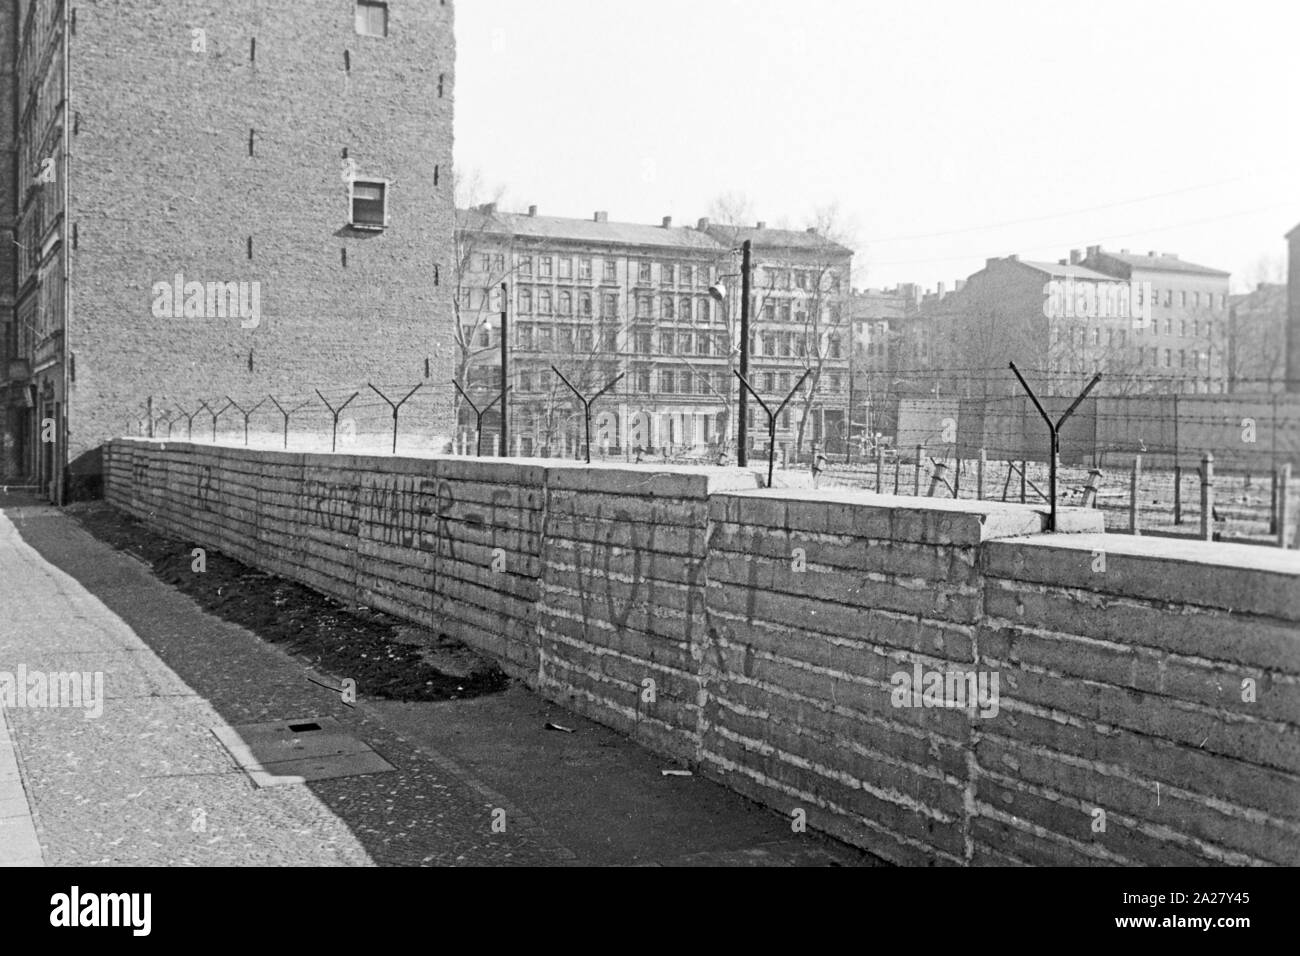 Die mitten durch die Stadt verlaufende Mauer in Berlin, Deutschland 1963. The wall as a border amidst the city of Berlin, Germany 1963. Stock Photo